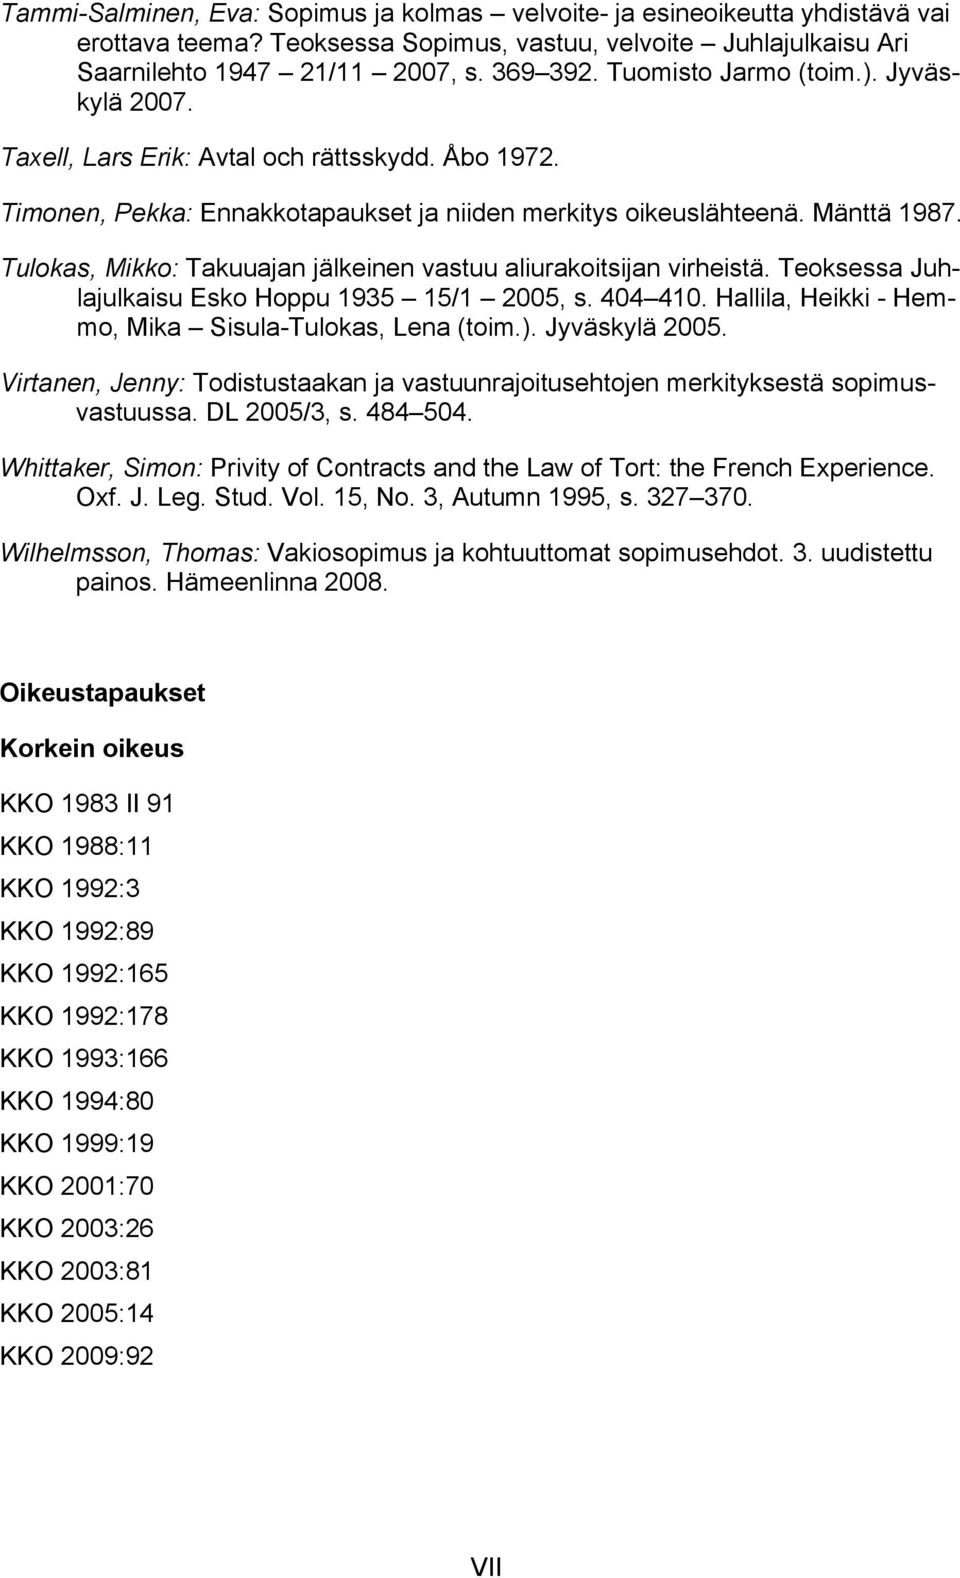 Tulokas, Mikko: Takuuajan jälkeinen vastuu aliurakoitsijan virheistä. Teoksessa Juhlajulkaisu Esko Hoppu 1935 15/1 2005, s. 404 410. Hallila, Heikki - Hemmo, Mika Sisula-Tulokas, Lena (toim.).